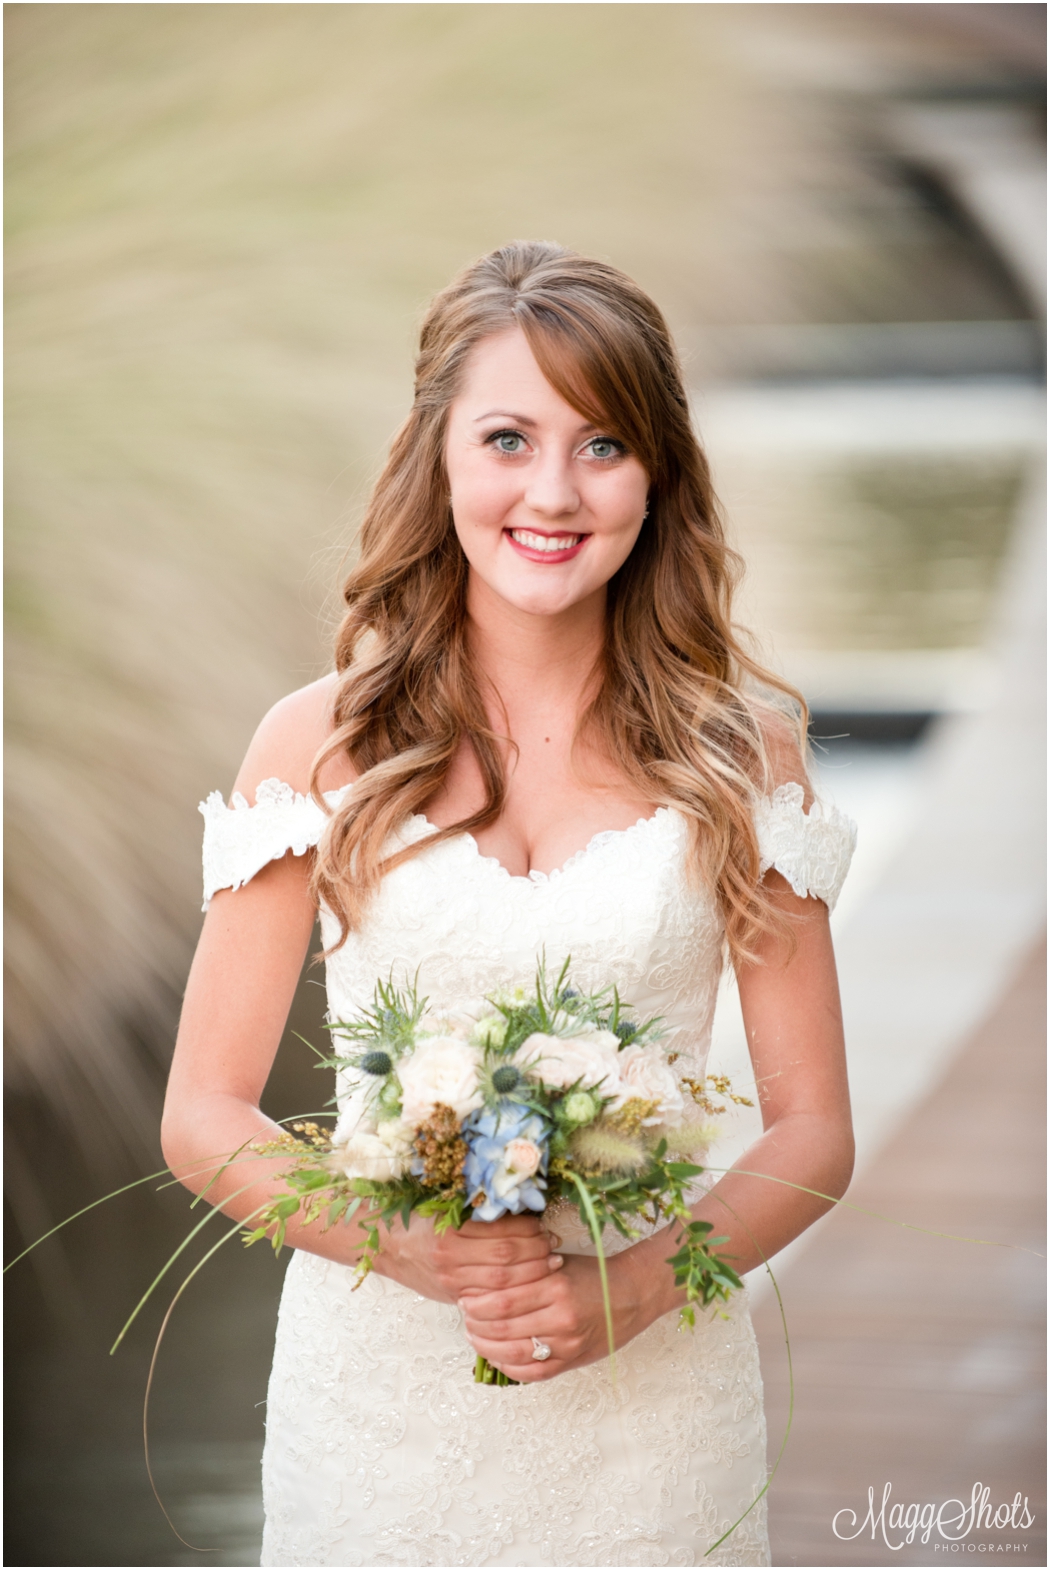 Bridal Portraits at Wayne Ferguson Plaza, Lewisville Wedding Photographer